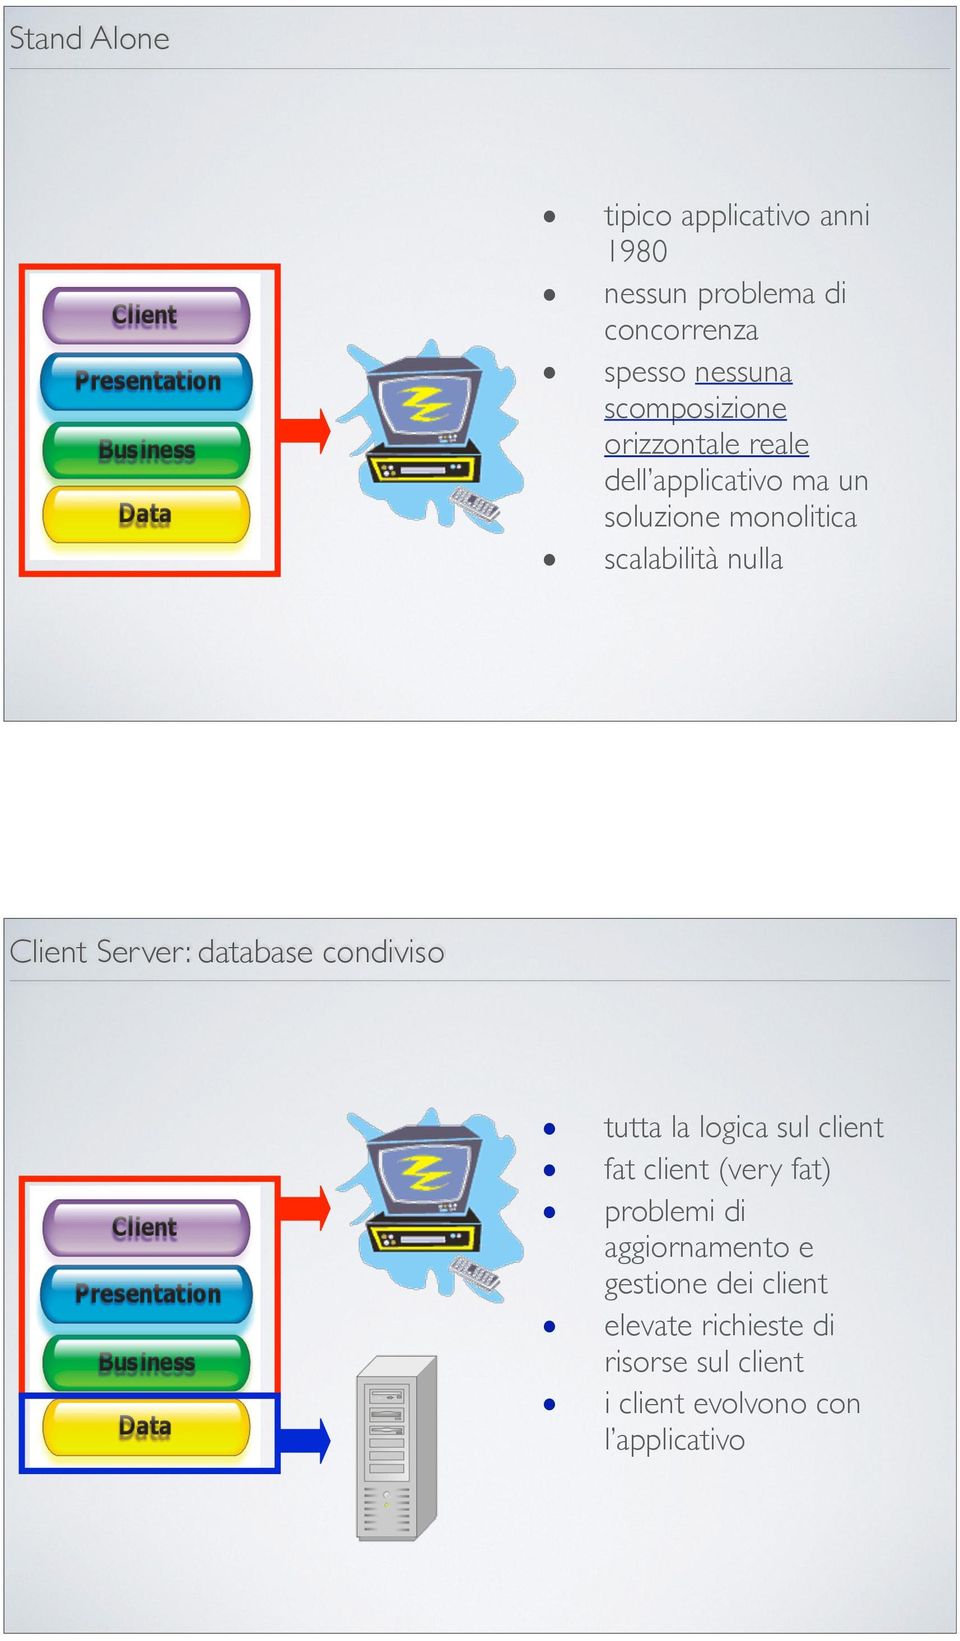 Client Server: database condiviso tutta la logica sul client fat client (very fat) problemi di